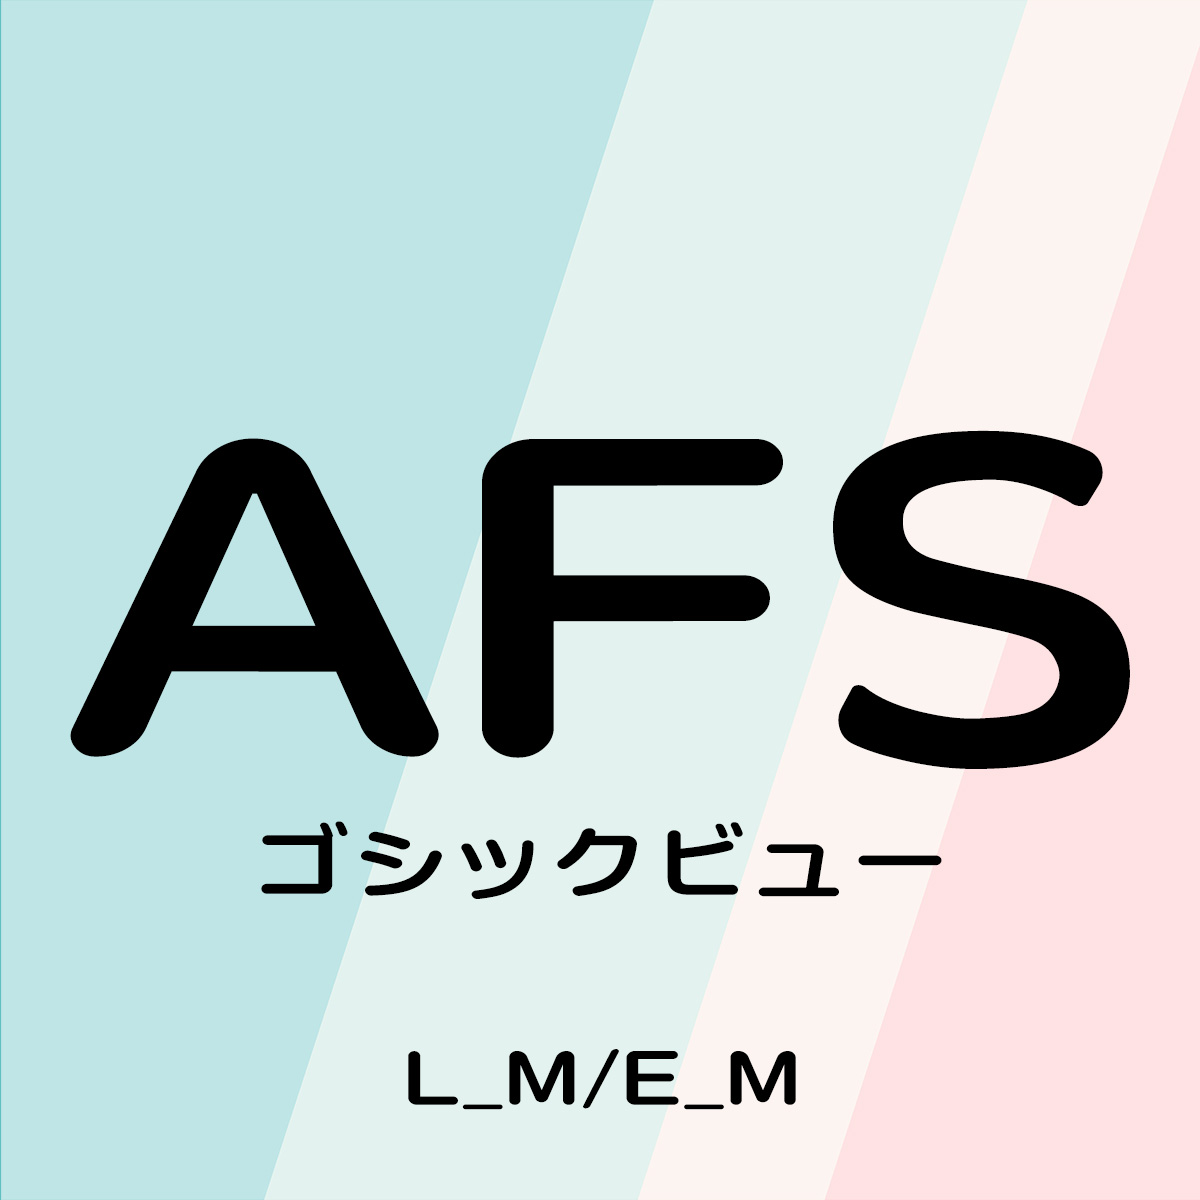 AFSゴシックビュー (L_M/E_M)